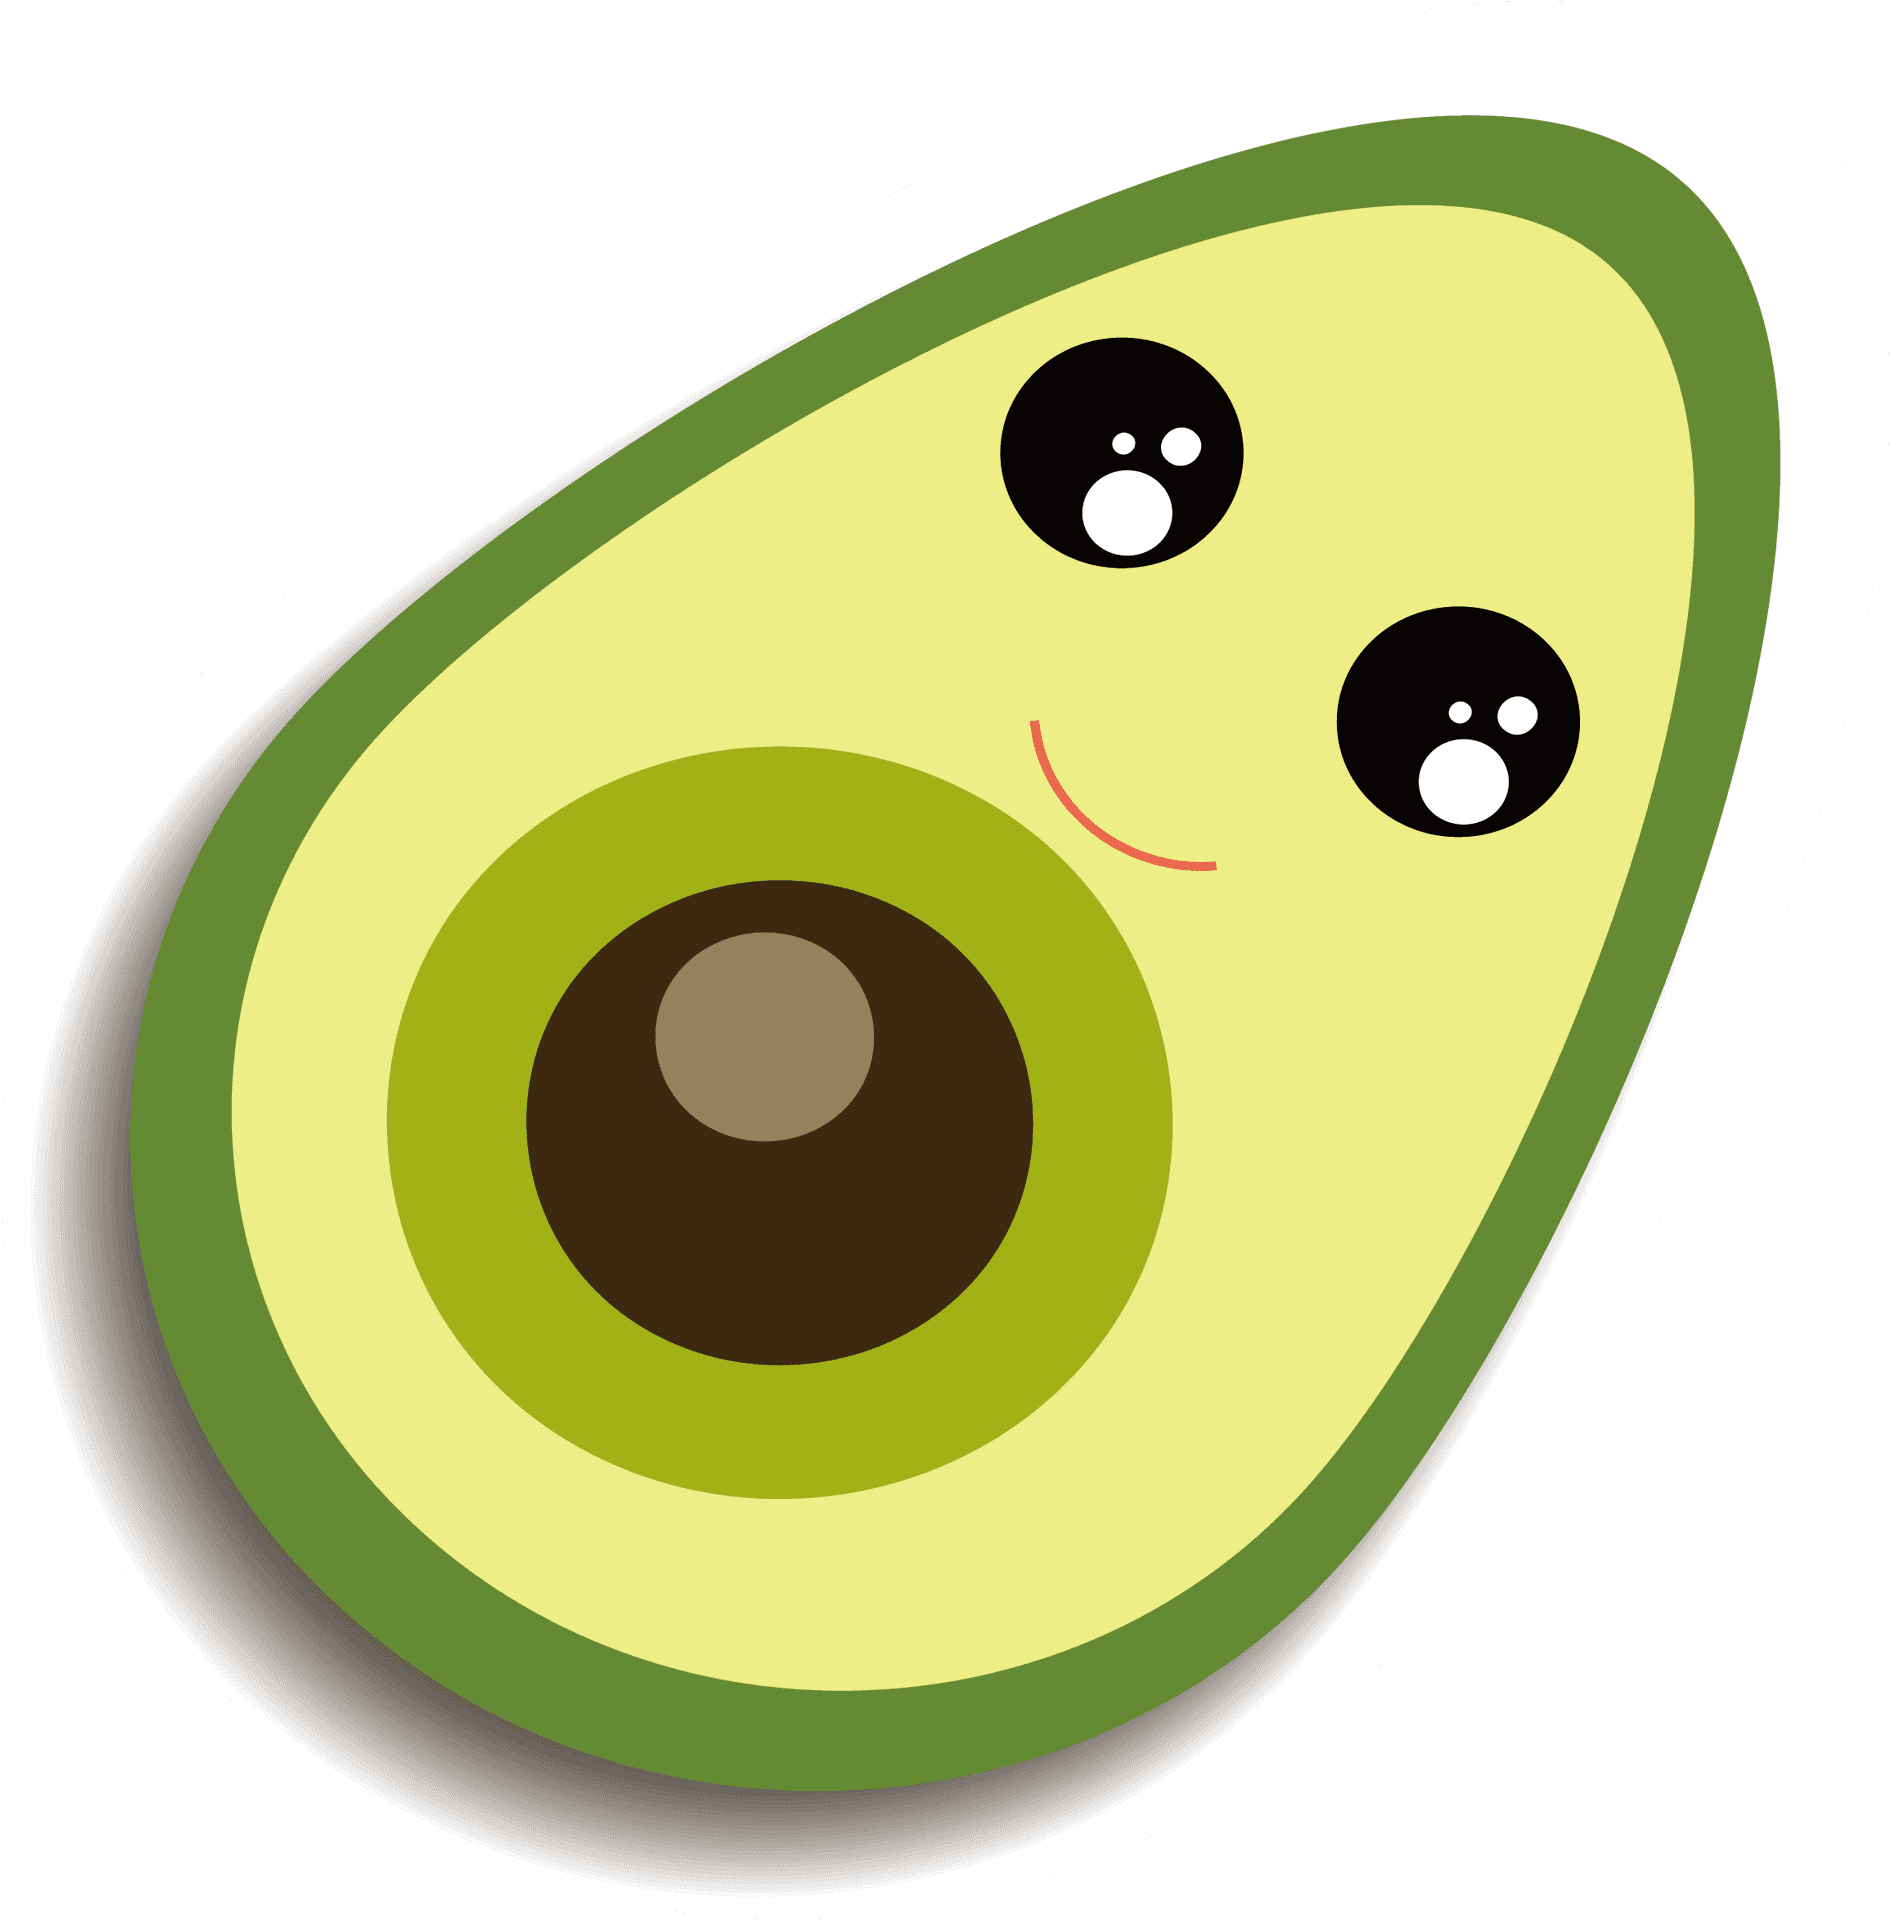 Cute Avocado Cartoon Character PNG